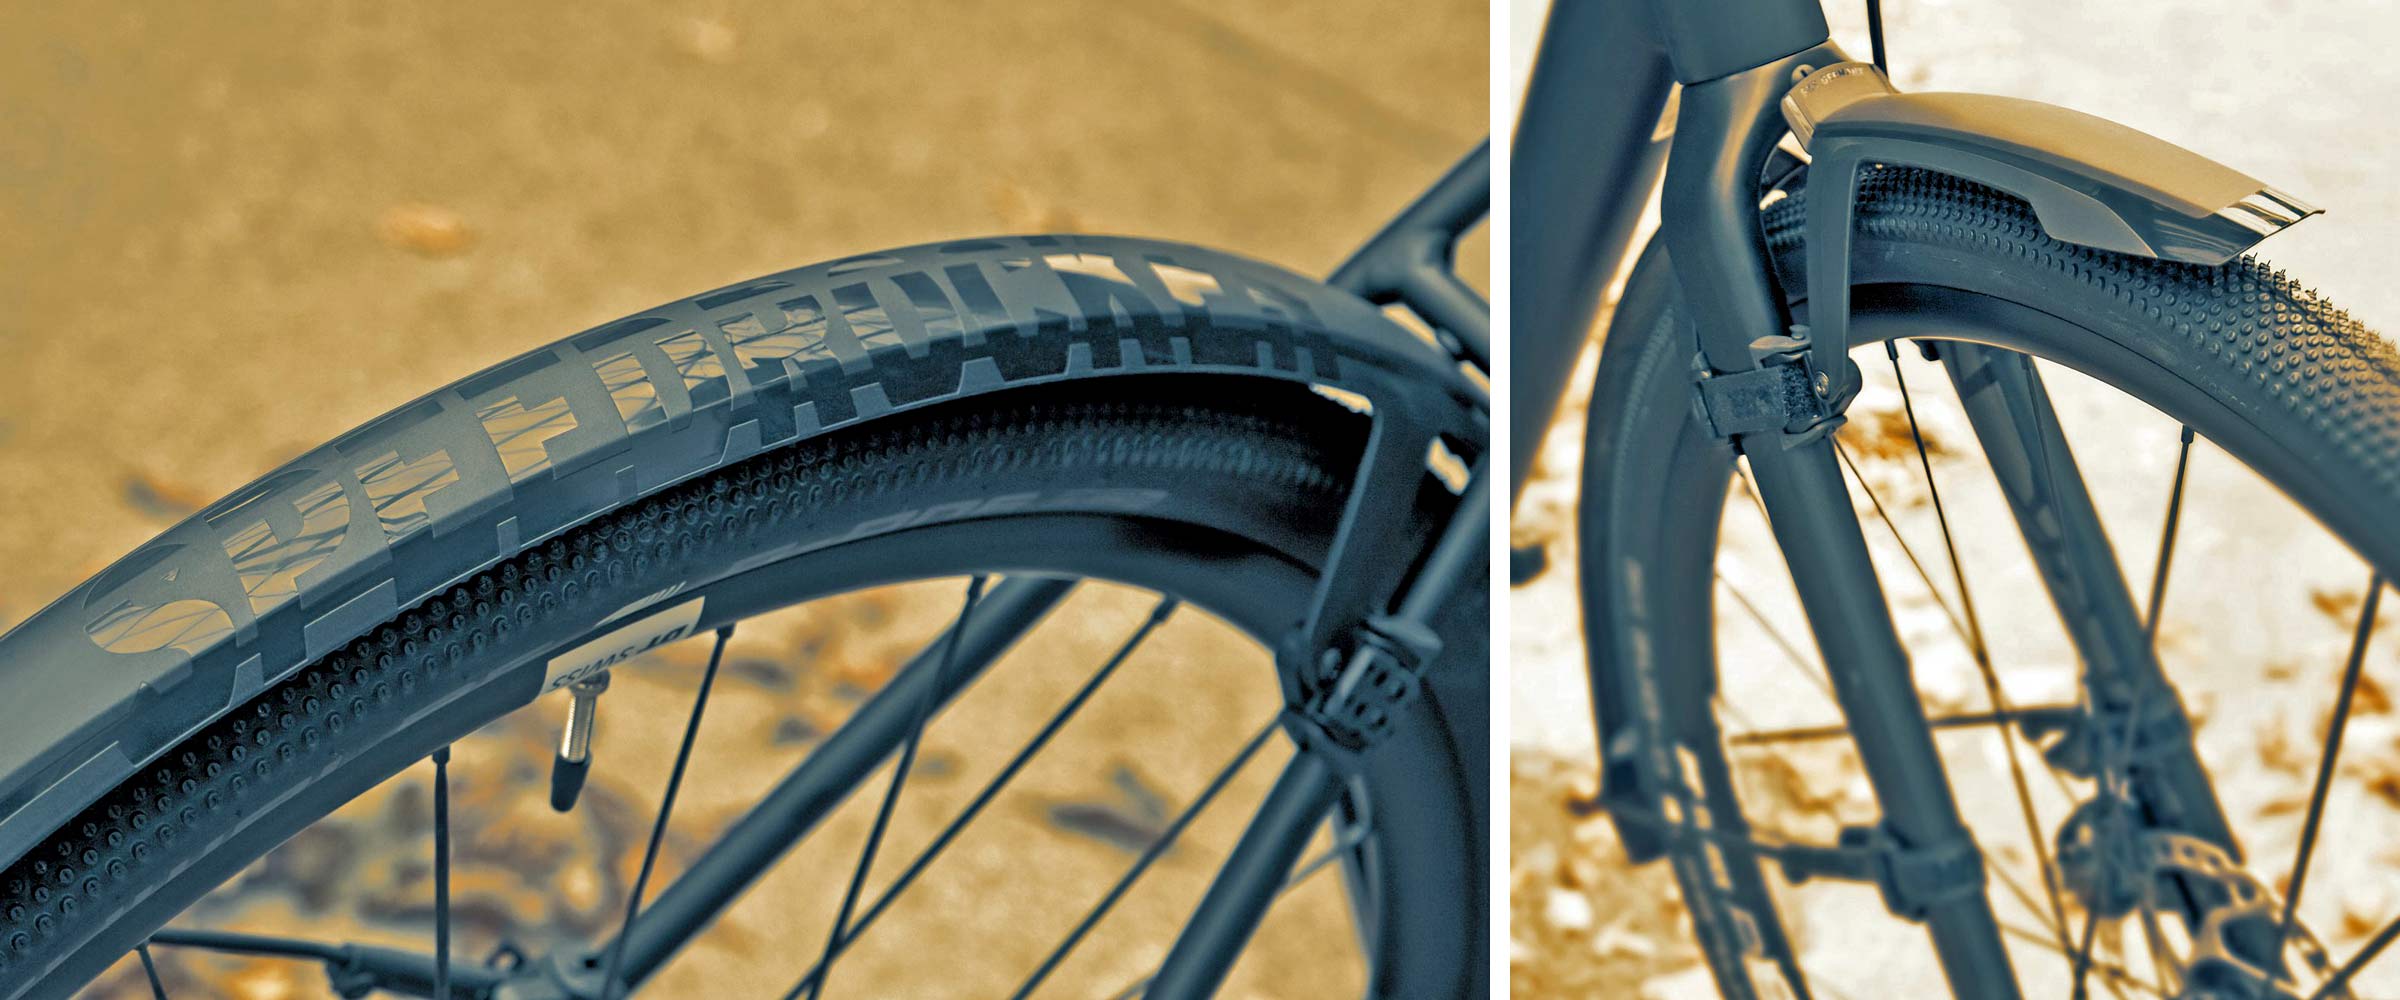 SKS Speedrocker fenders, fat tire high volume gravel bike full coverage mudguards